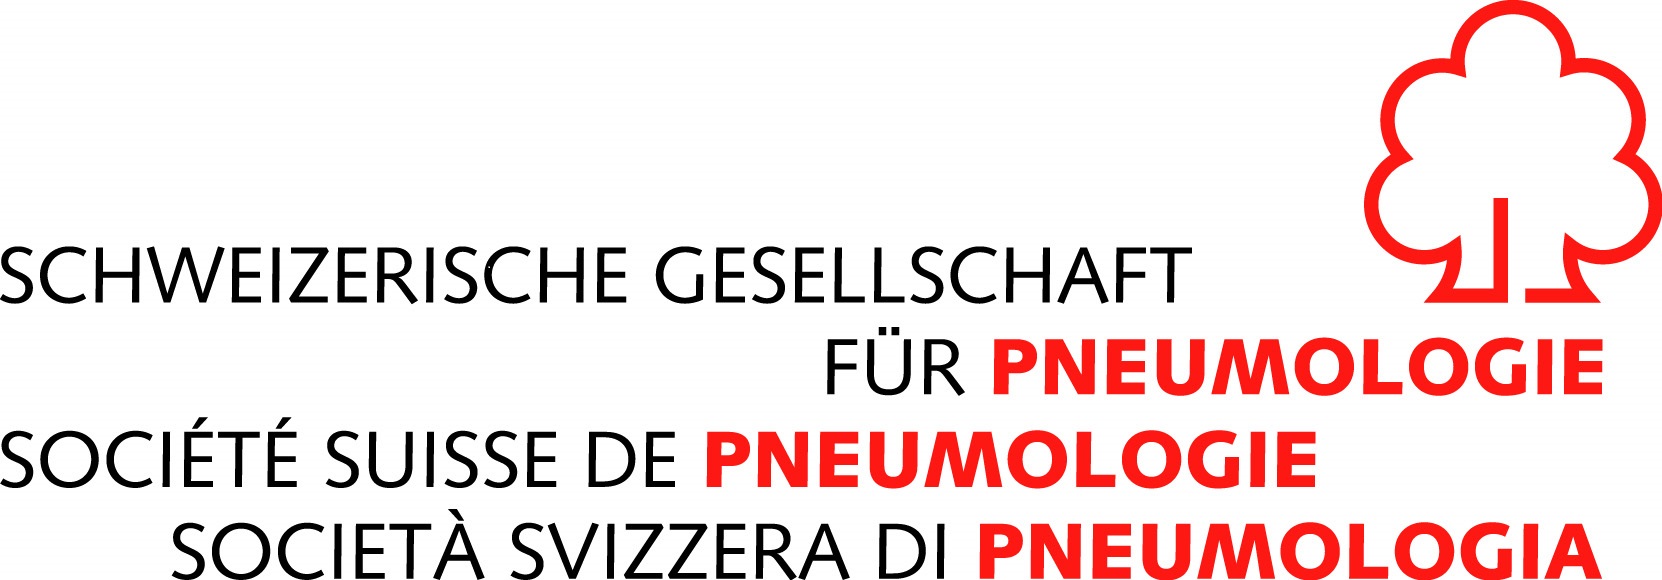 Société Suisse de Pneumologie - SGP